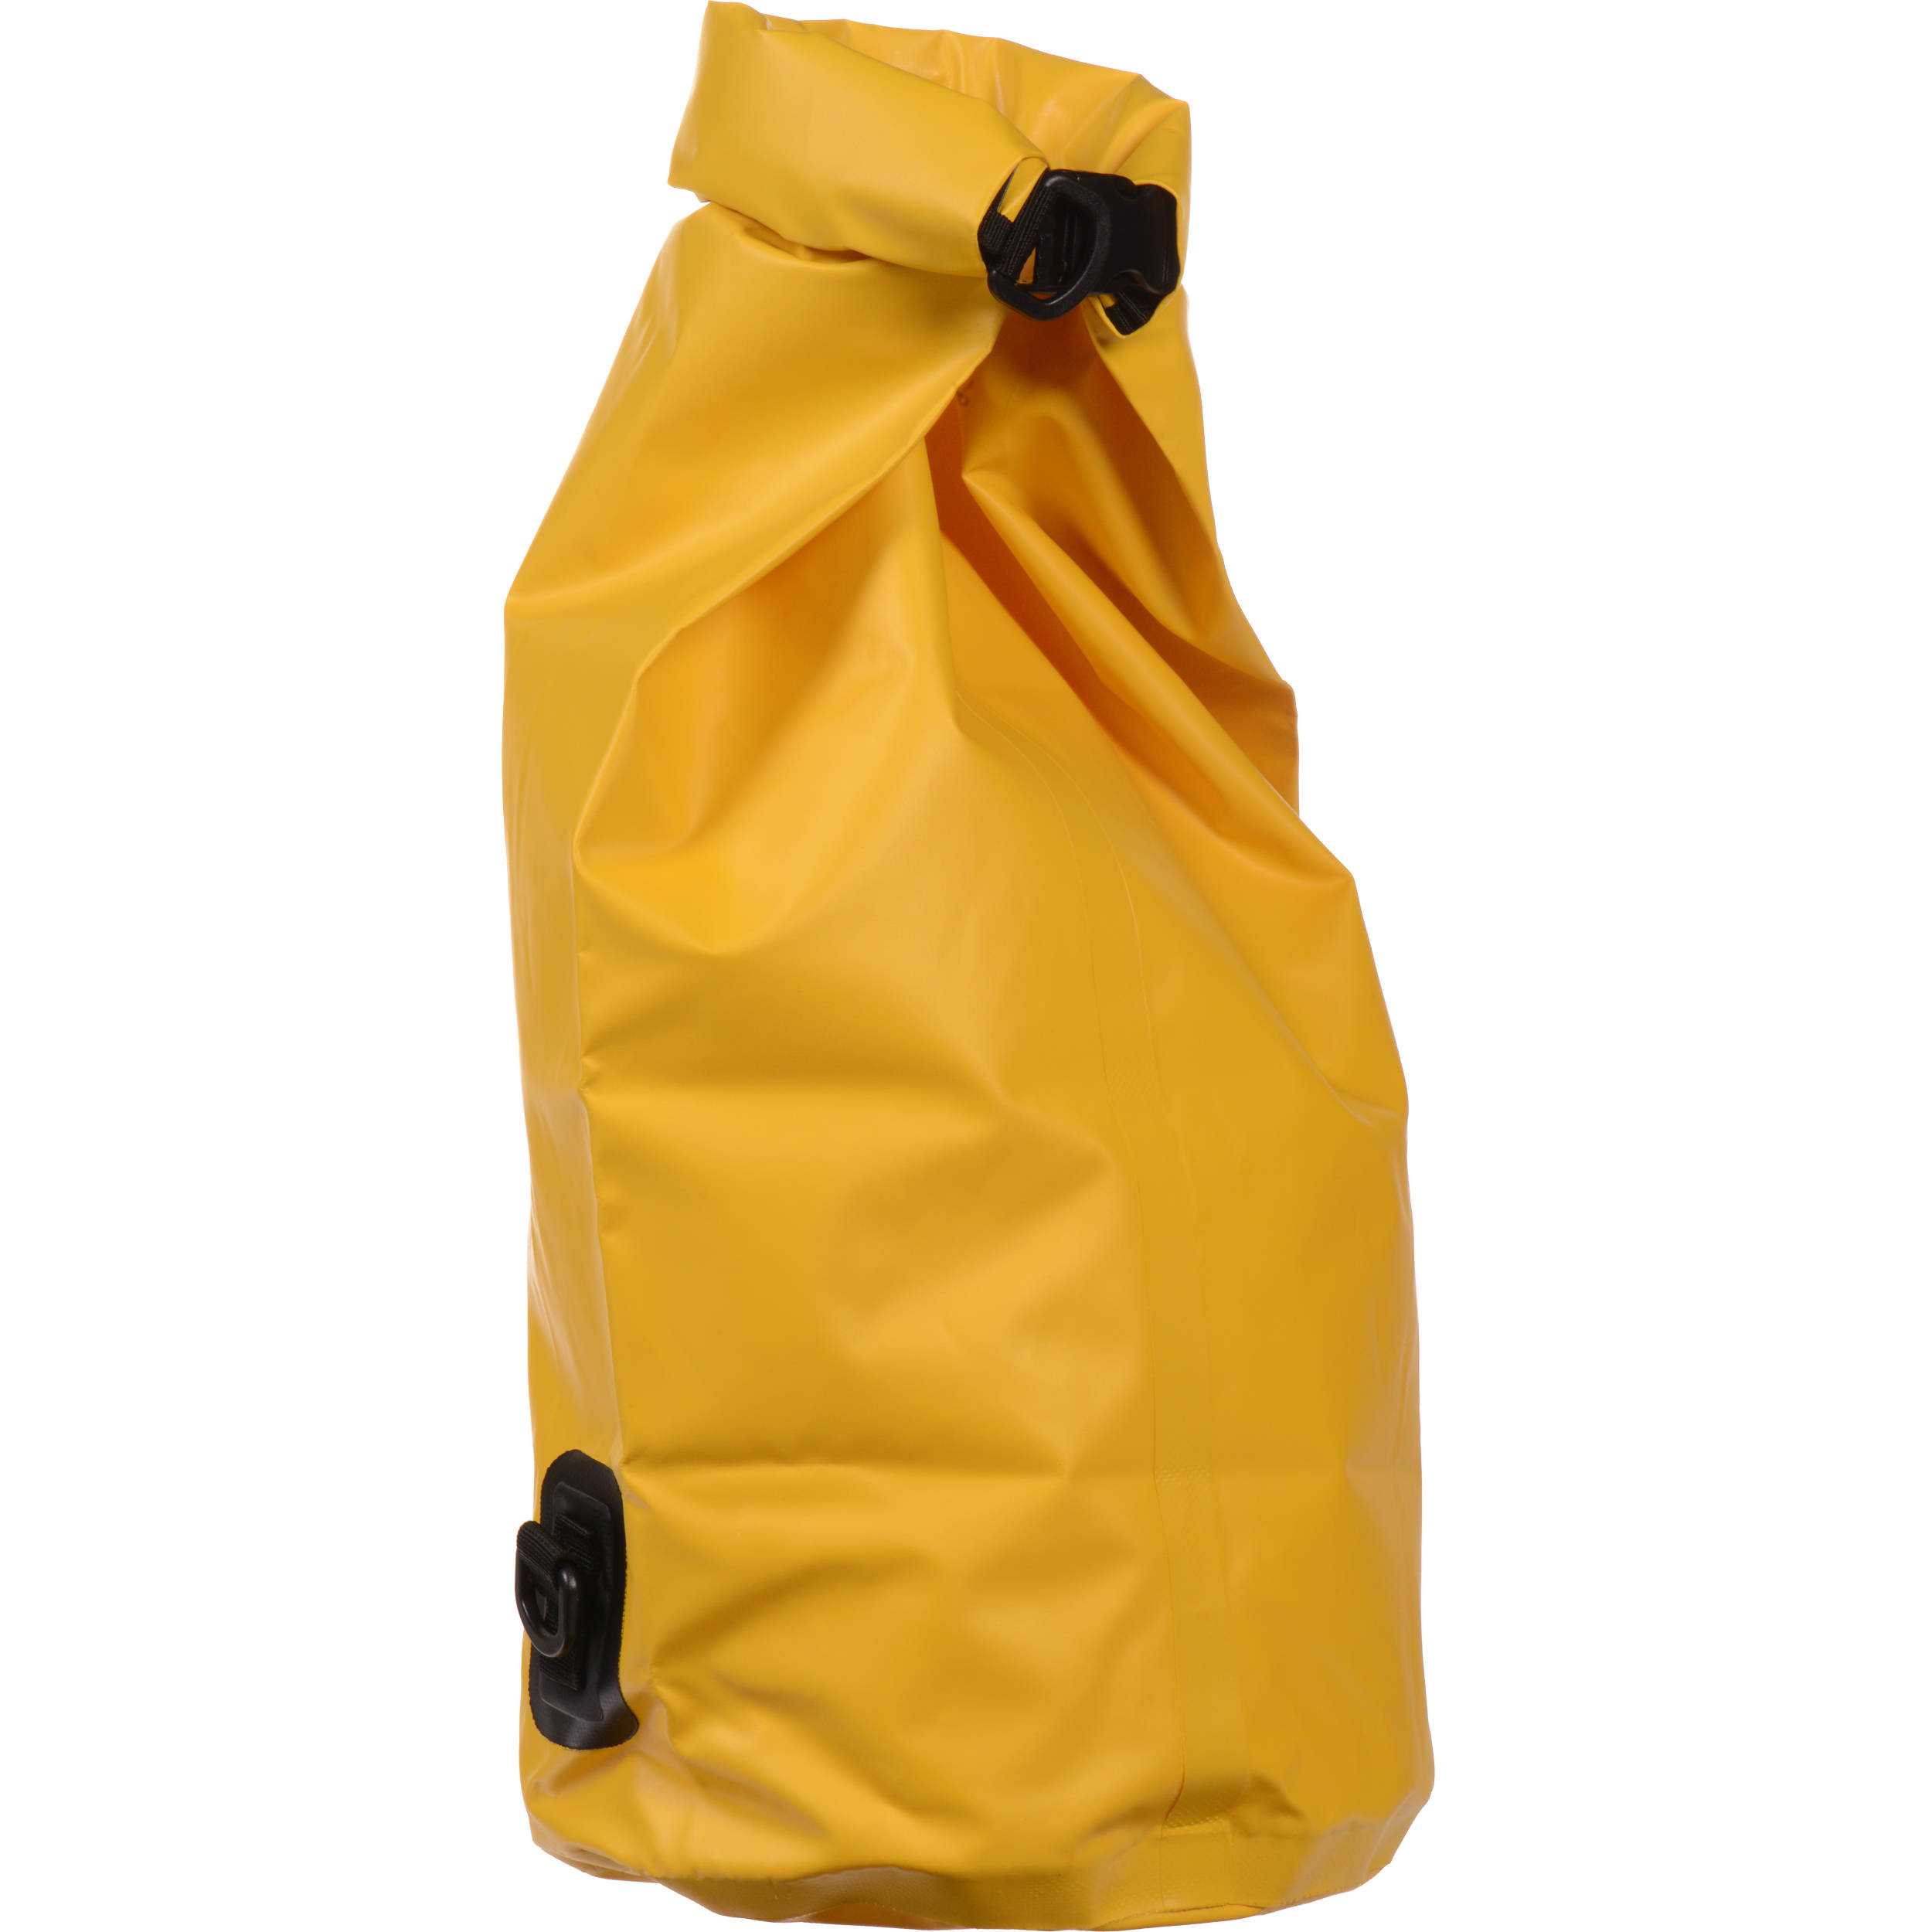 waterproof roll bag